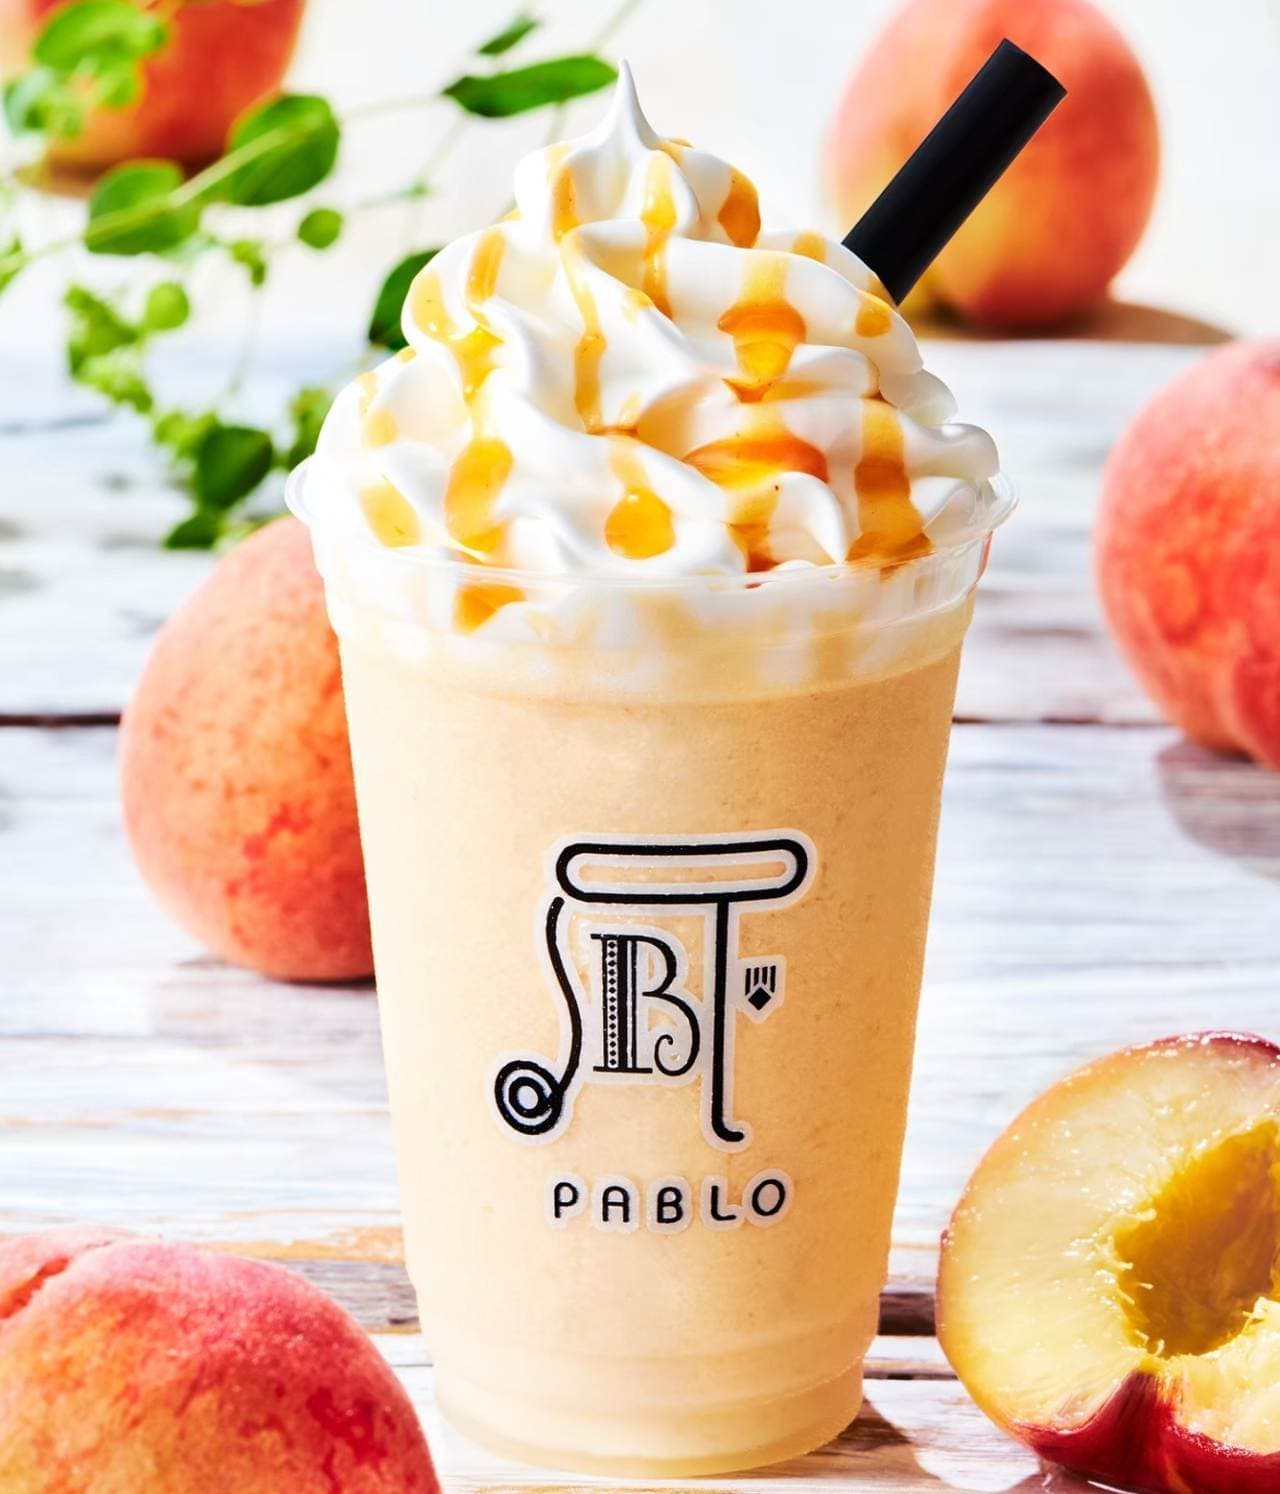 PABLO's seasonal smoothie "Peach Peach"